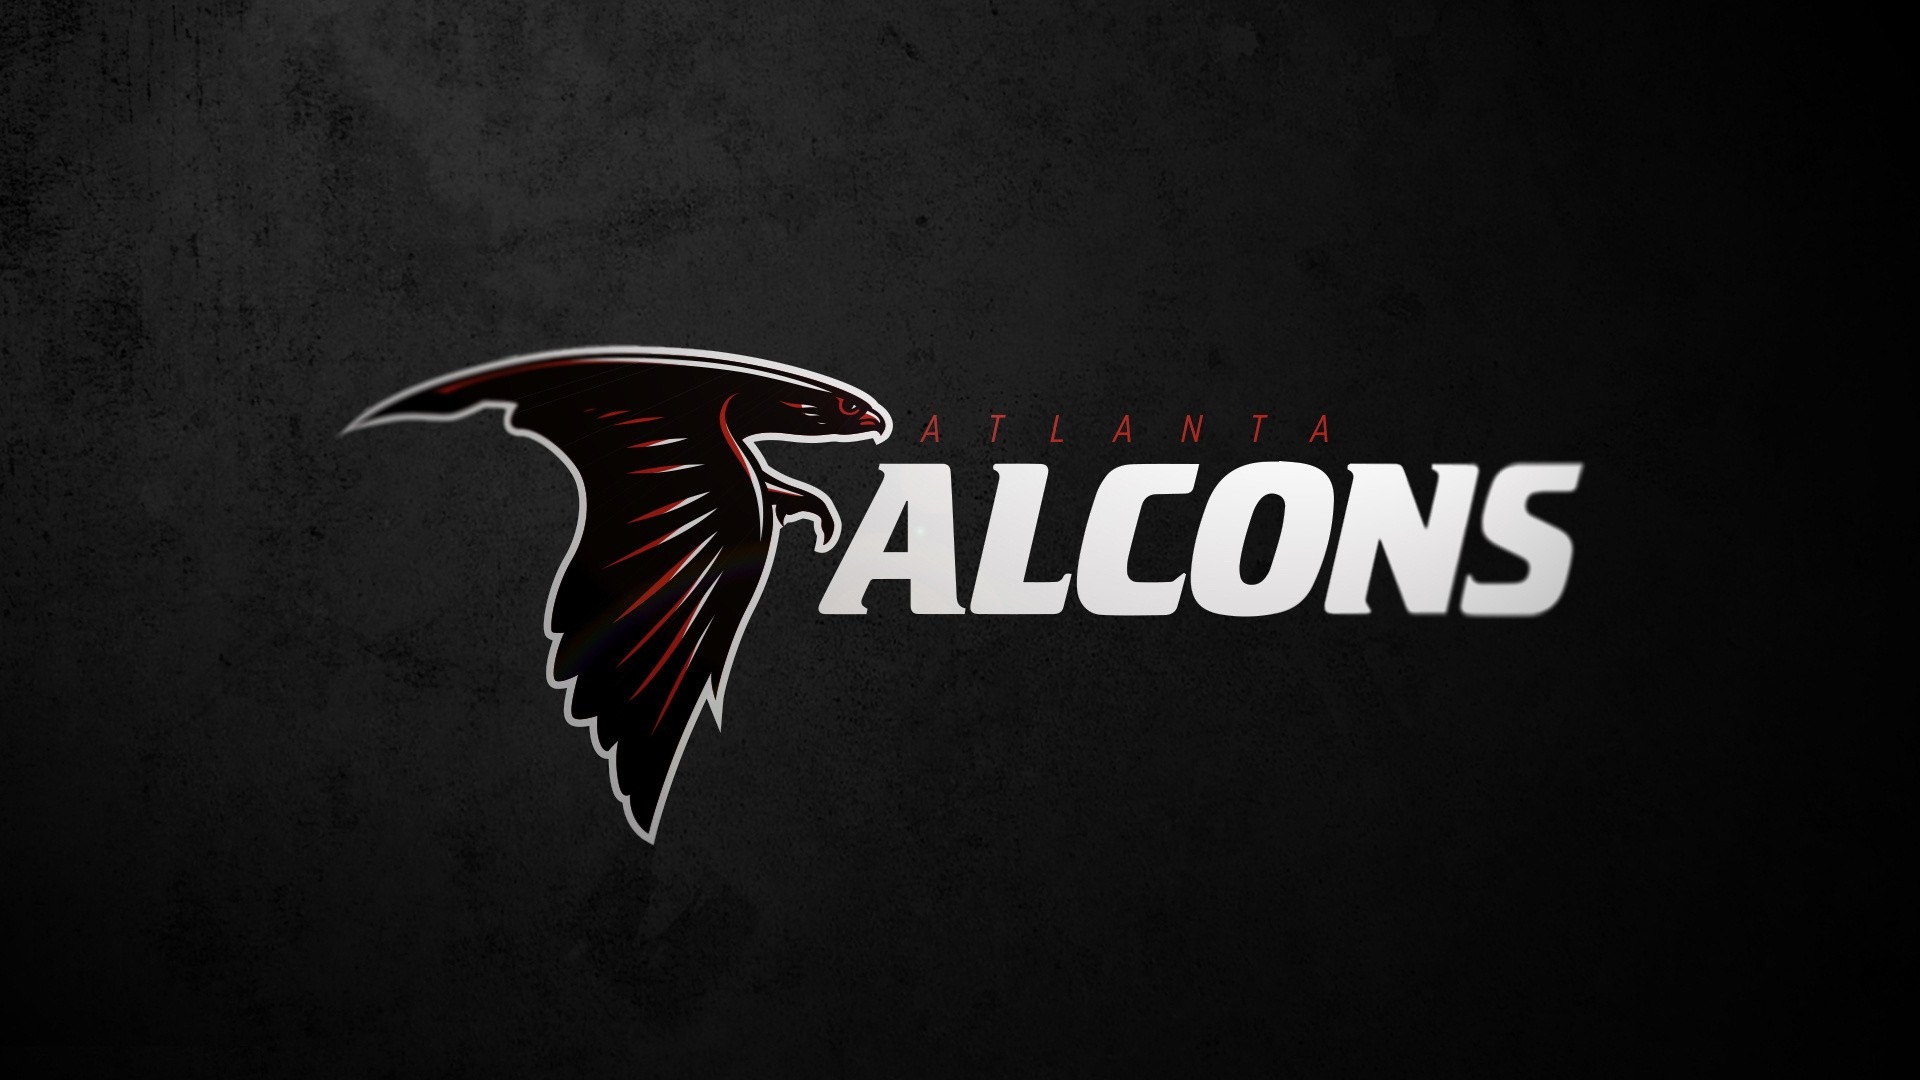 HD Desktop Wallpaper Atlanta Falcons | 2019 NFL Football Wallpapers